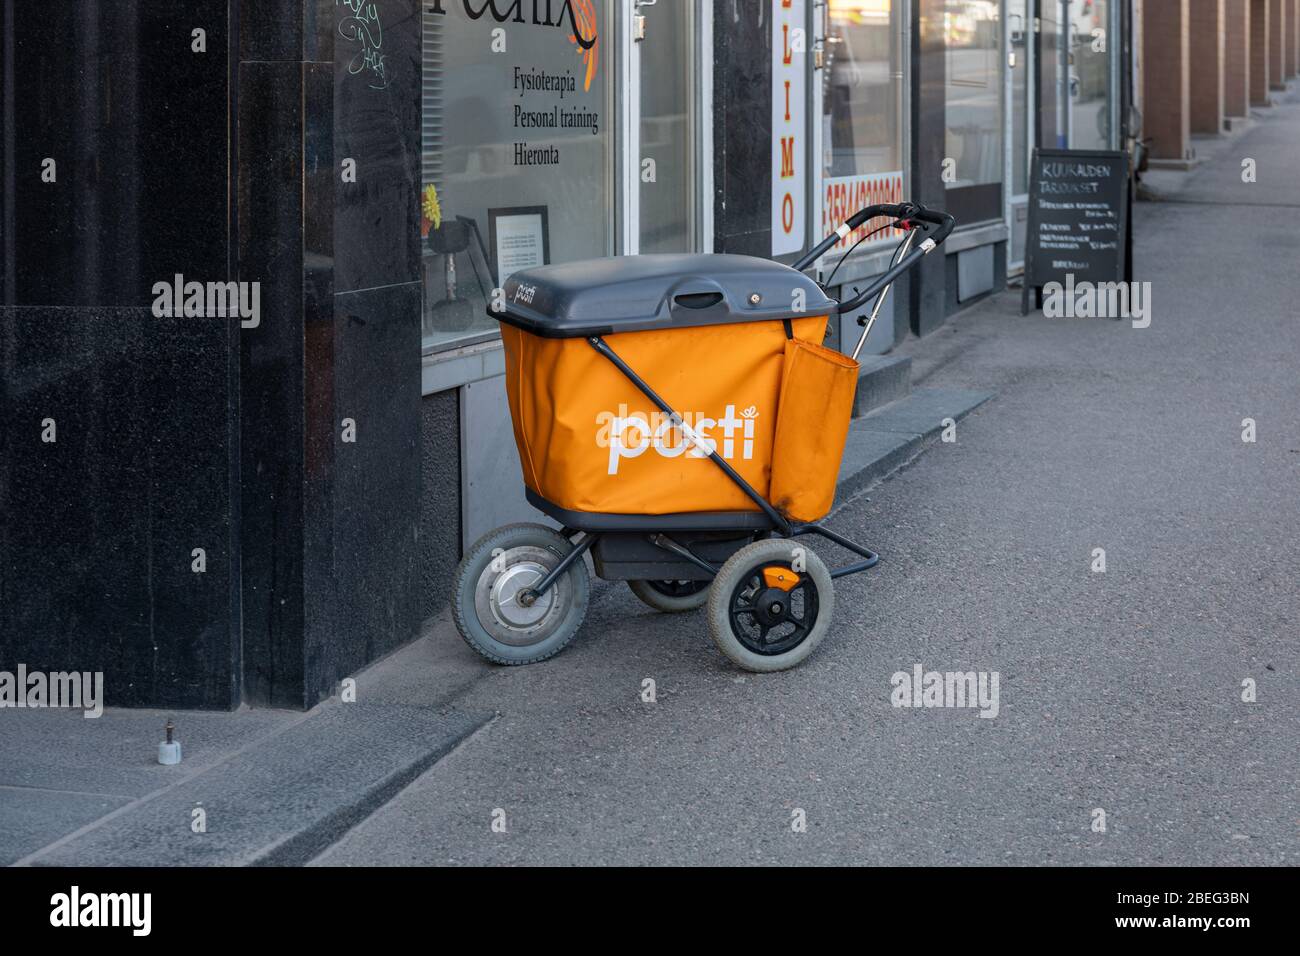 Chariot de poste de poste de l'ancien homme de l'école sans surveillance sur le trottoir d'Helsinki, Finlande Banque D'Images